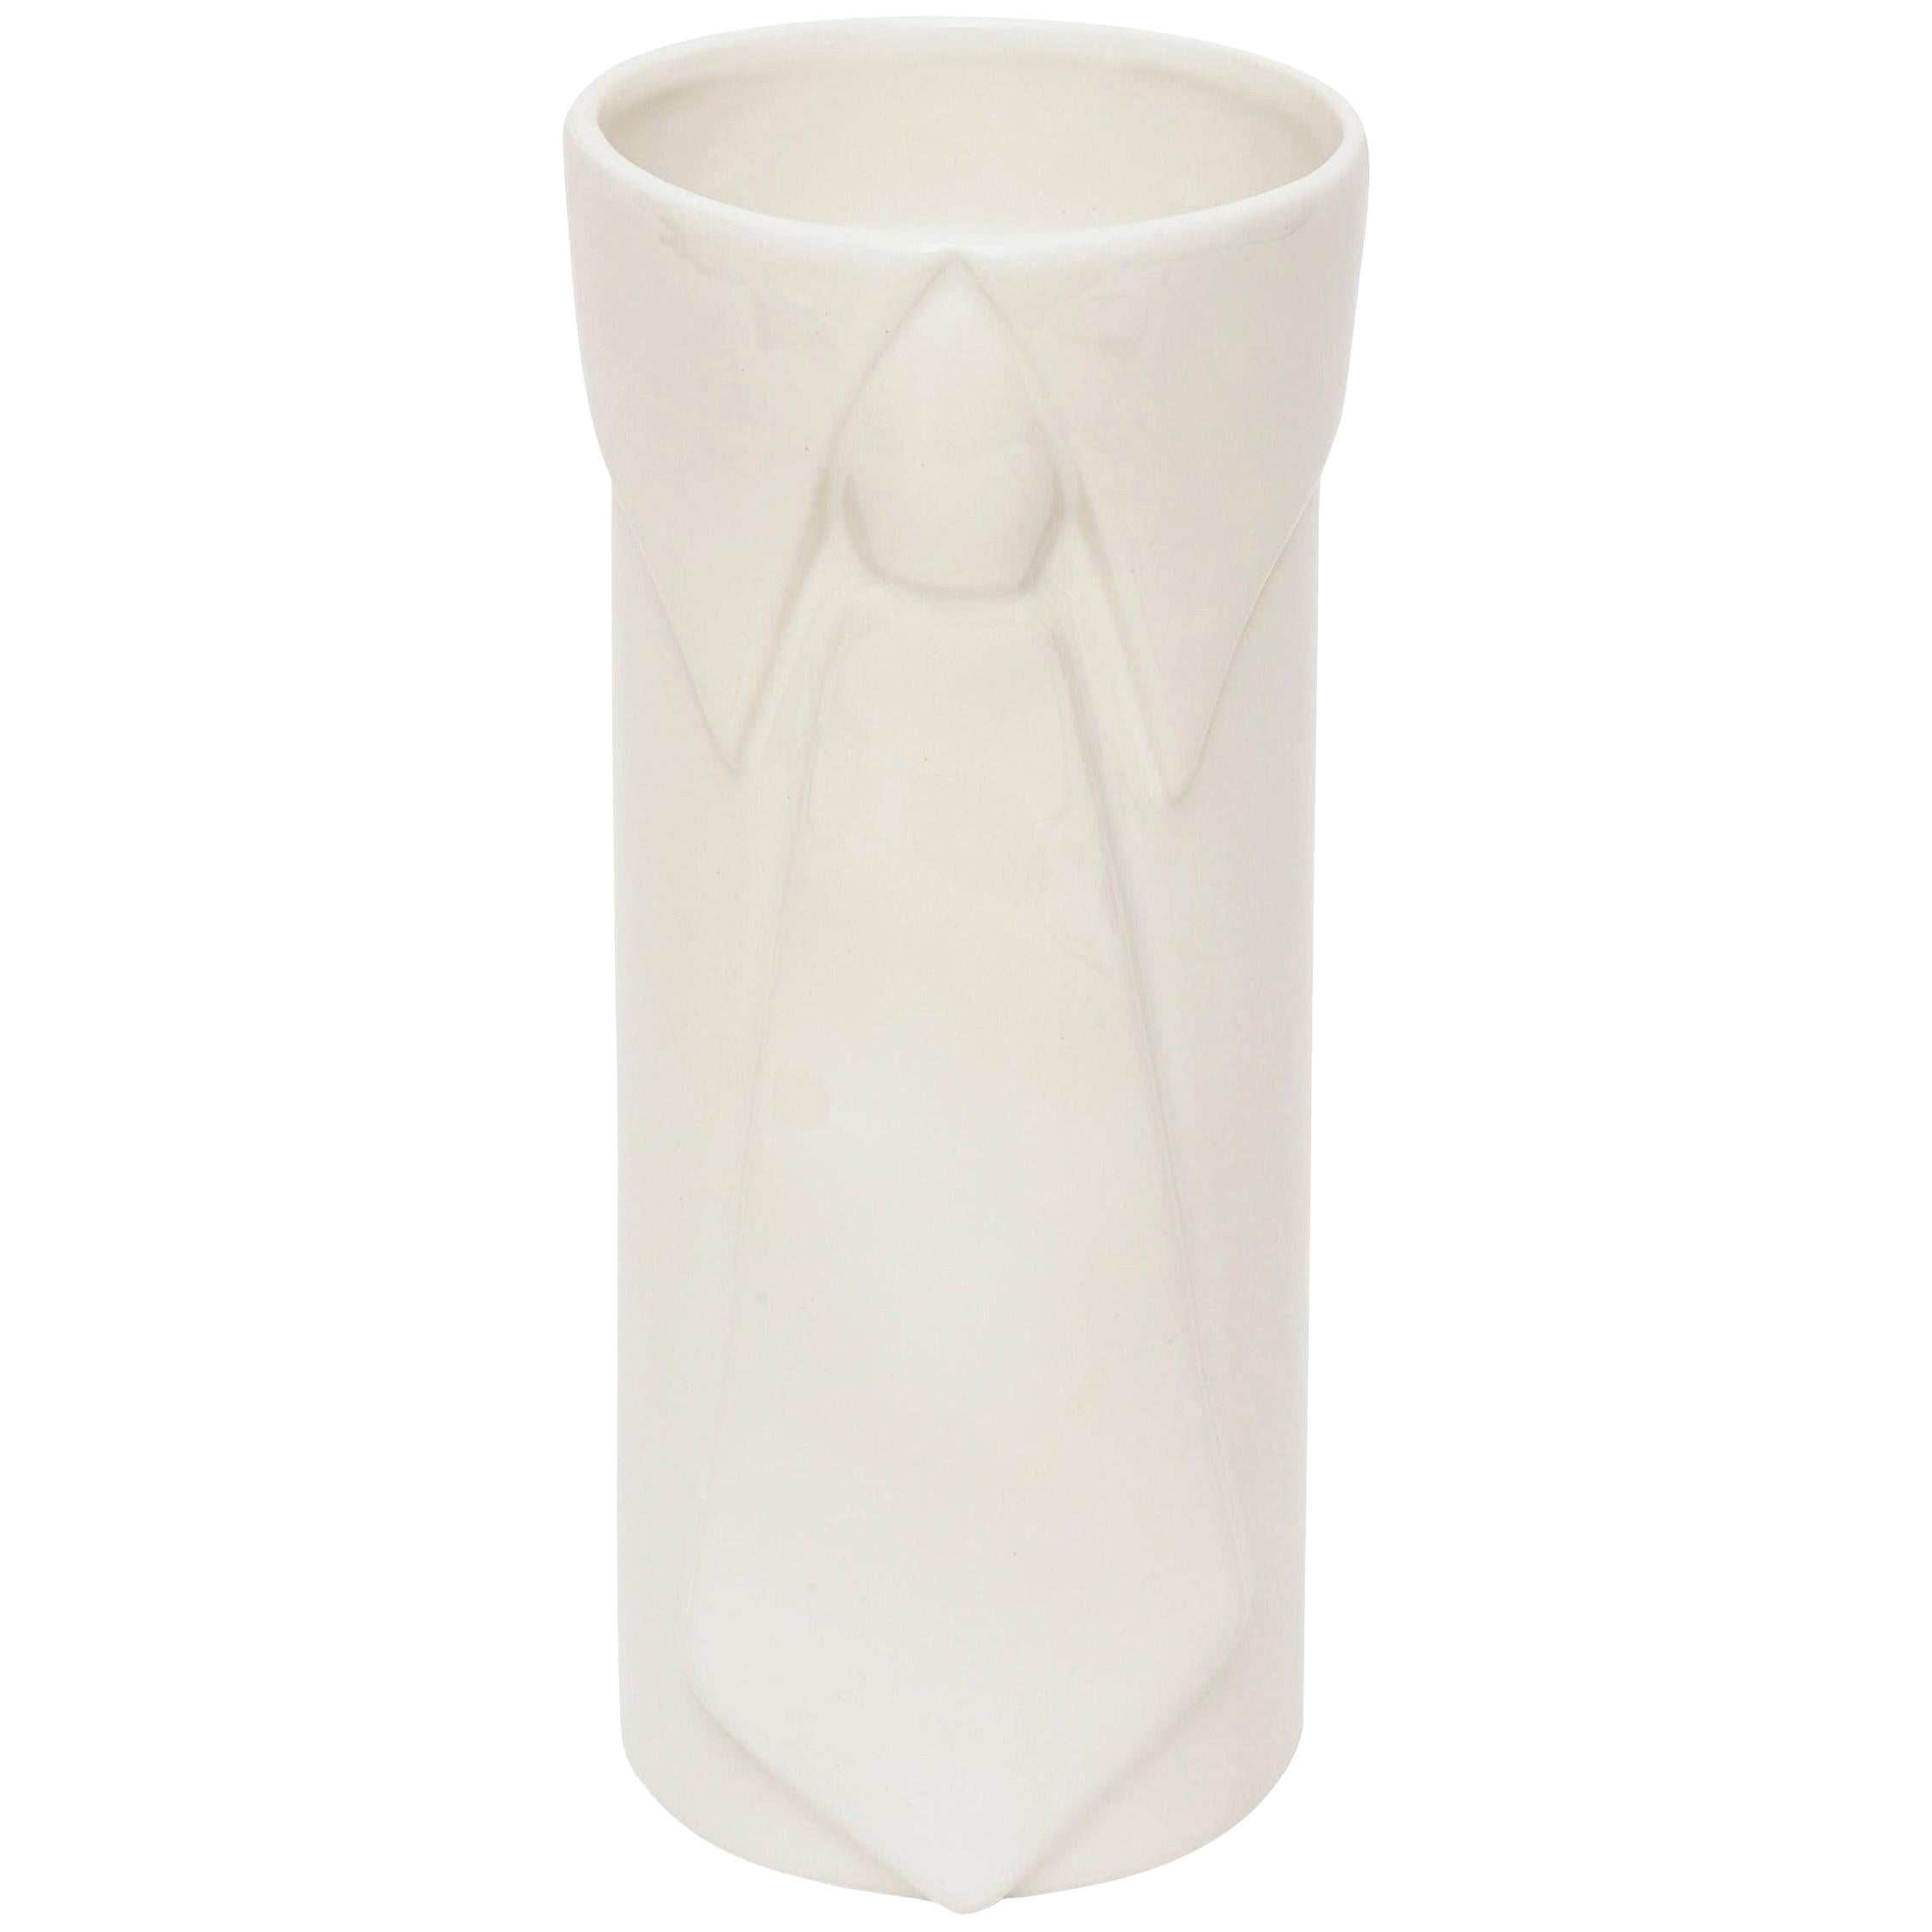 Raymor Pop Art Off-White Gazed Ceramic Vase Italian Vintage